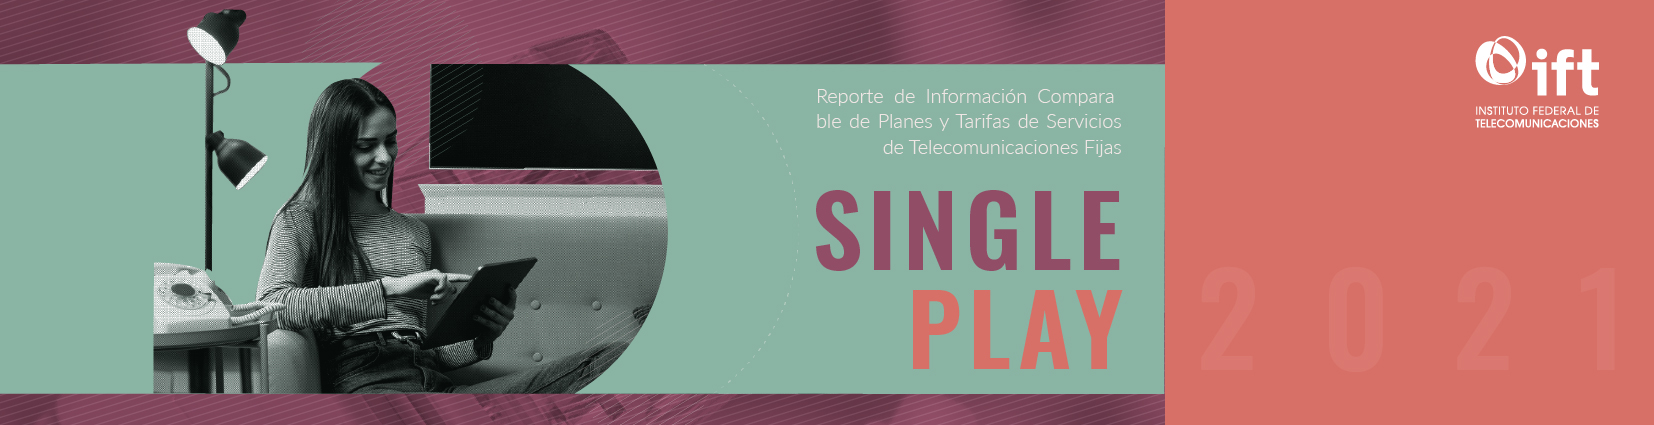 Reporte de Información Comparable de Planes y Tarifas de Servicios de Telecomunicaciones Fijas (Single Play) 2021